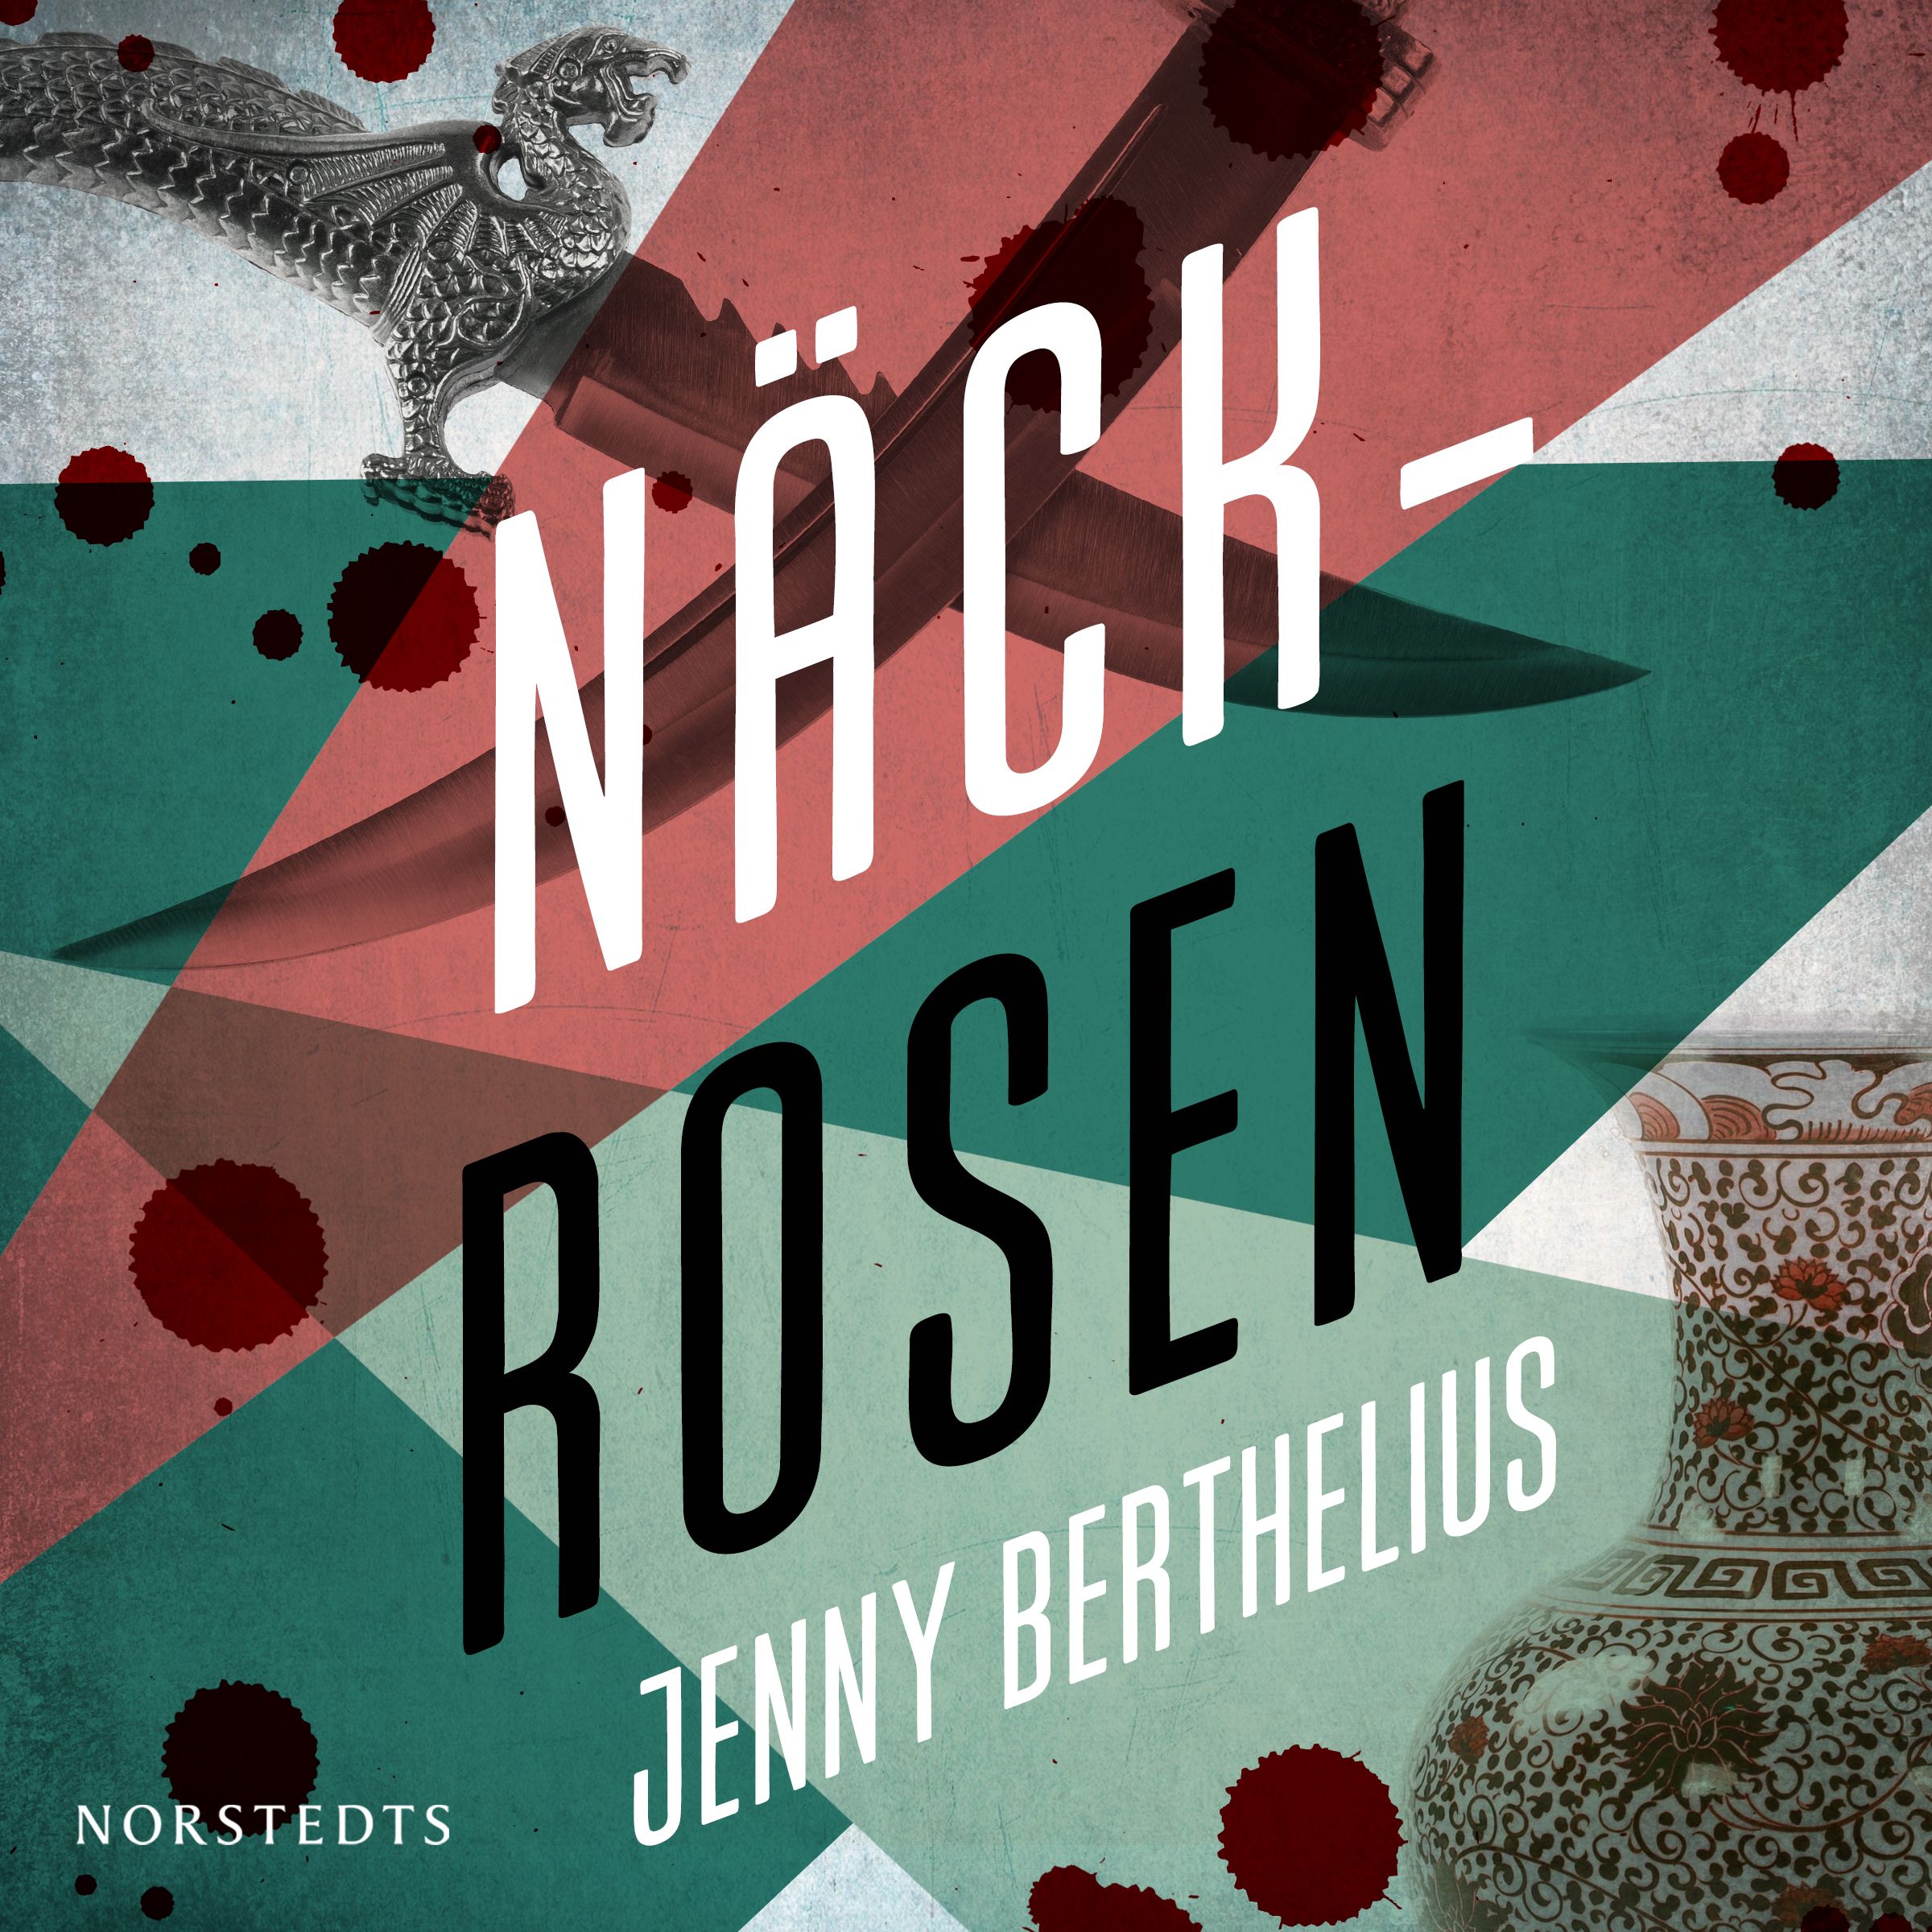 Näckrosen, ljudbok av Jenny Berthelius